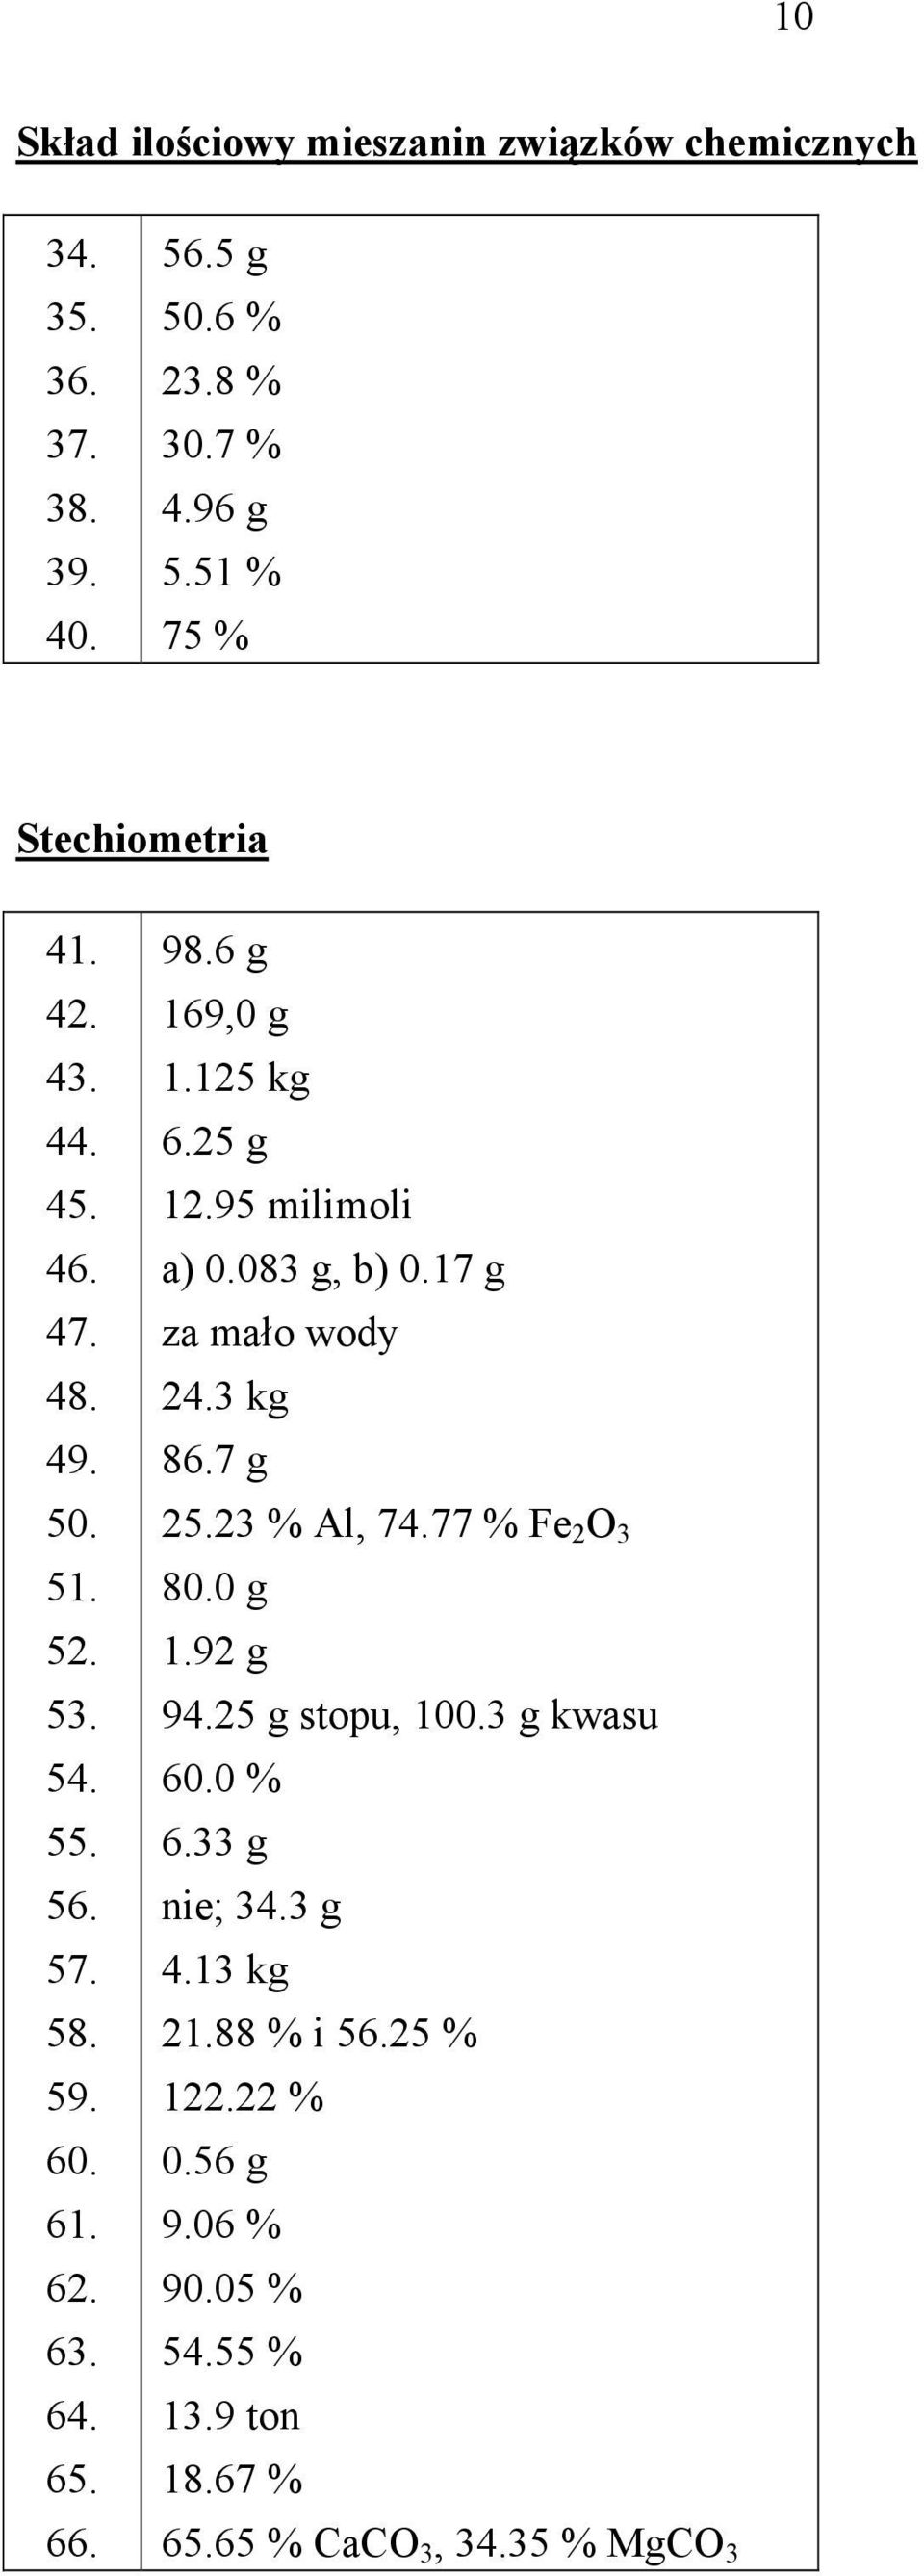 6 g 169,0 g 1.125 kg 6.25 g 12.95 milimoli a) 0.083 g, b) 0.17 g za mało wody 24.3 kg 86.7 g 25.23 % Al, 74.77 % Fe 2 O 3 80.0 g 1.92 g 94.